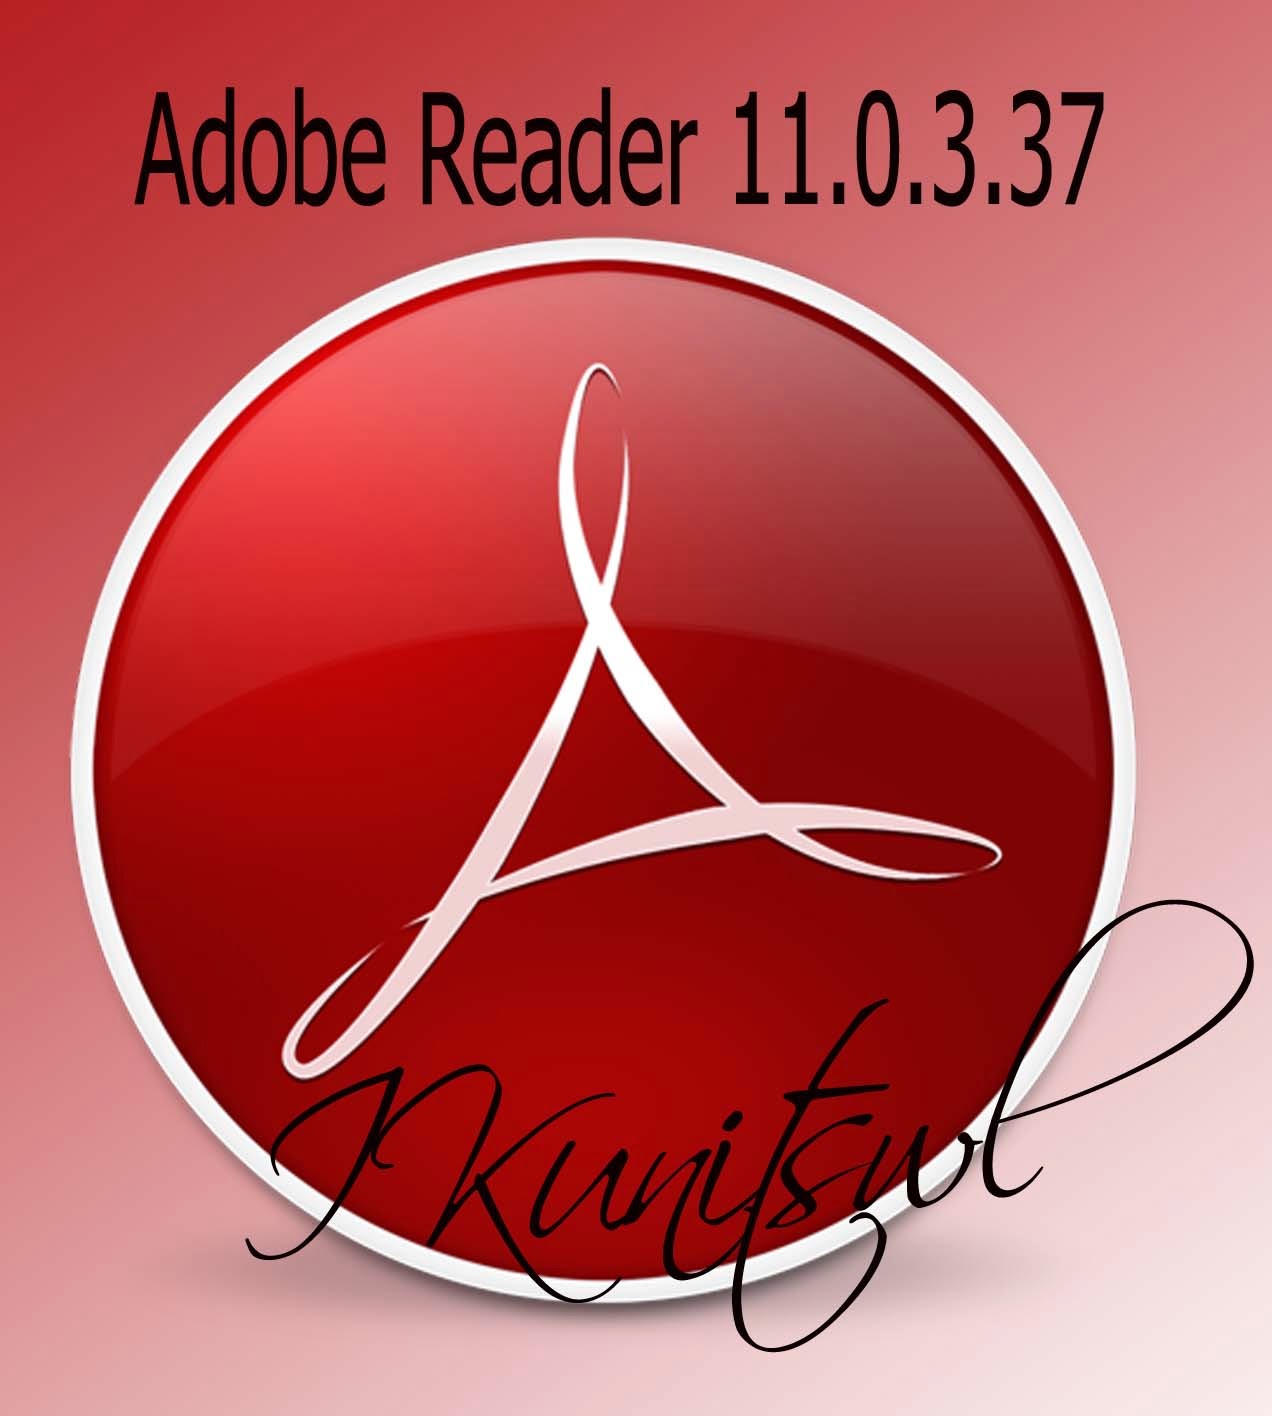 download software adobe reader pdf